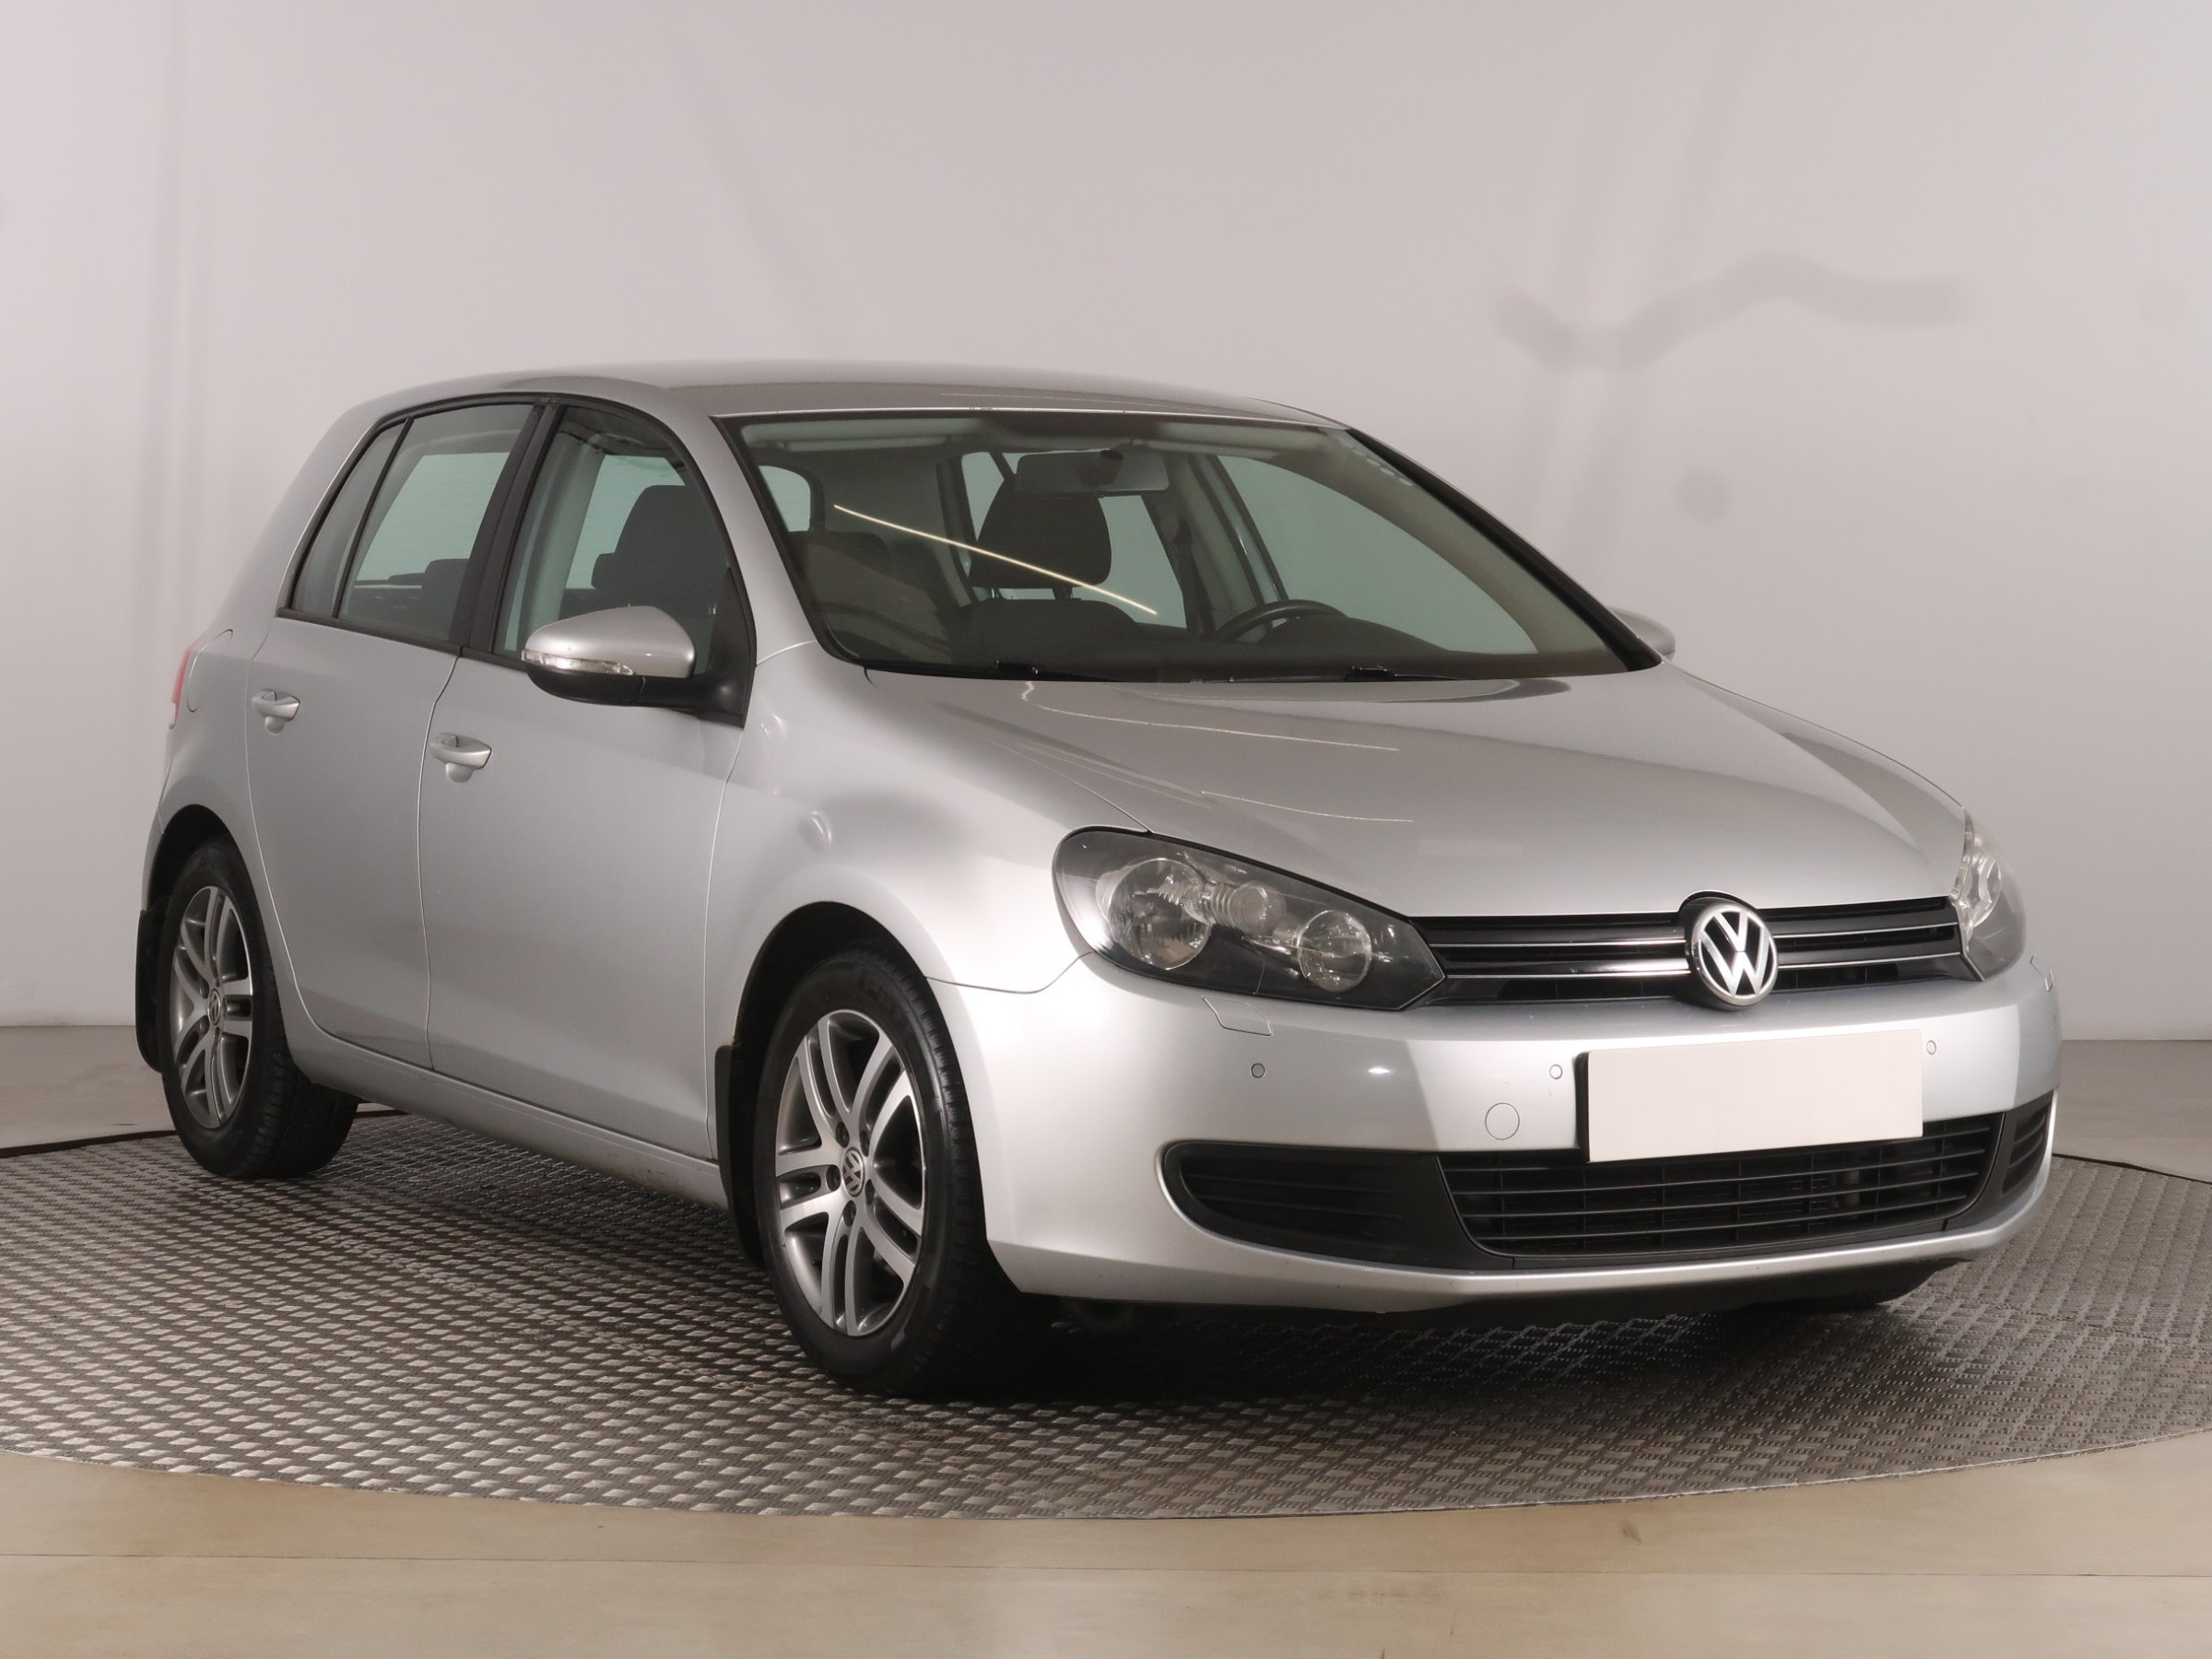 Volkswagen Golf 1.4 TSI Hatchback 2011 - 1